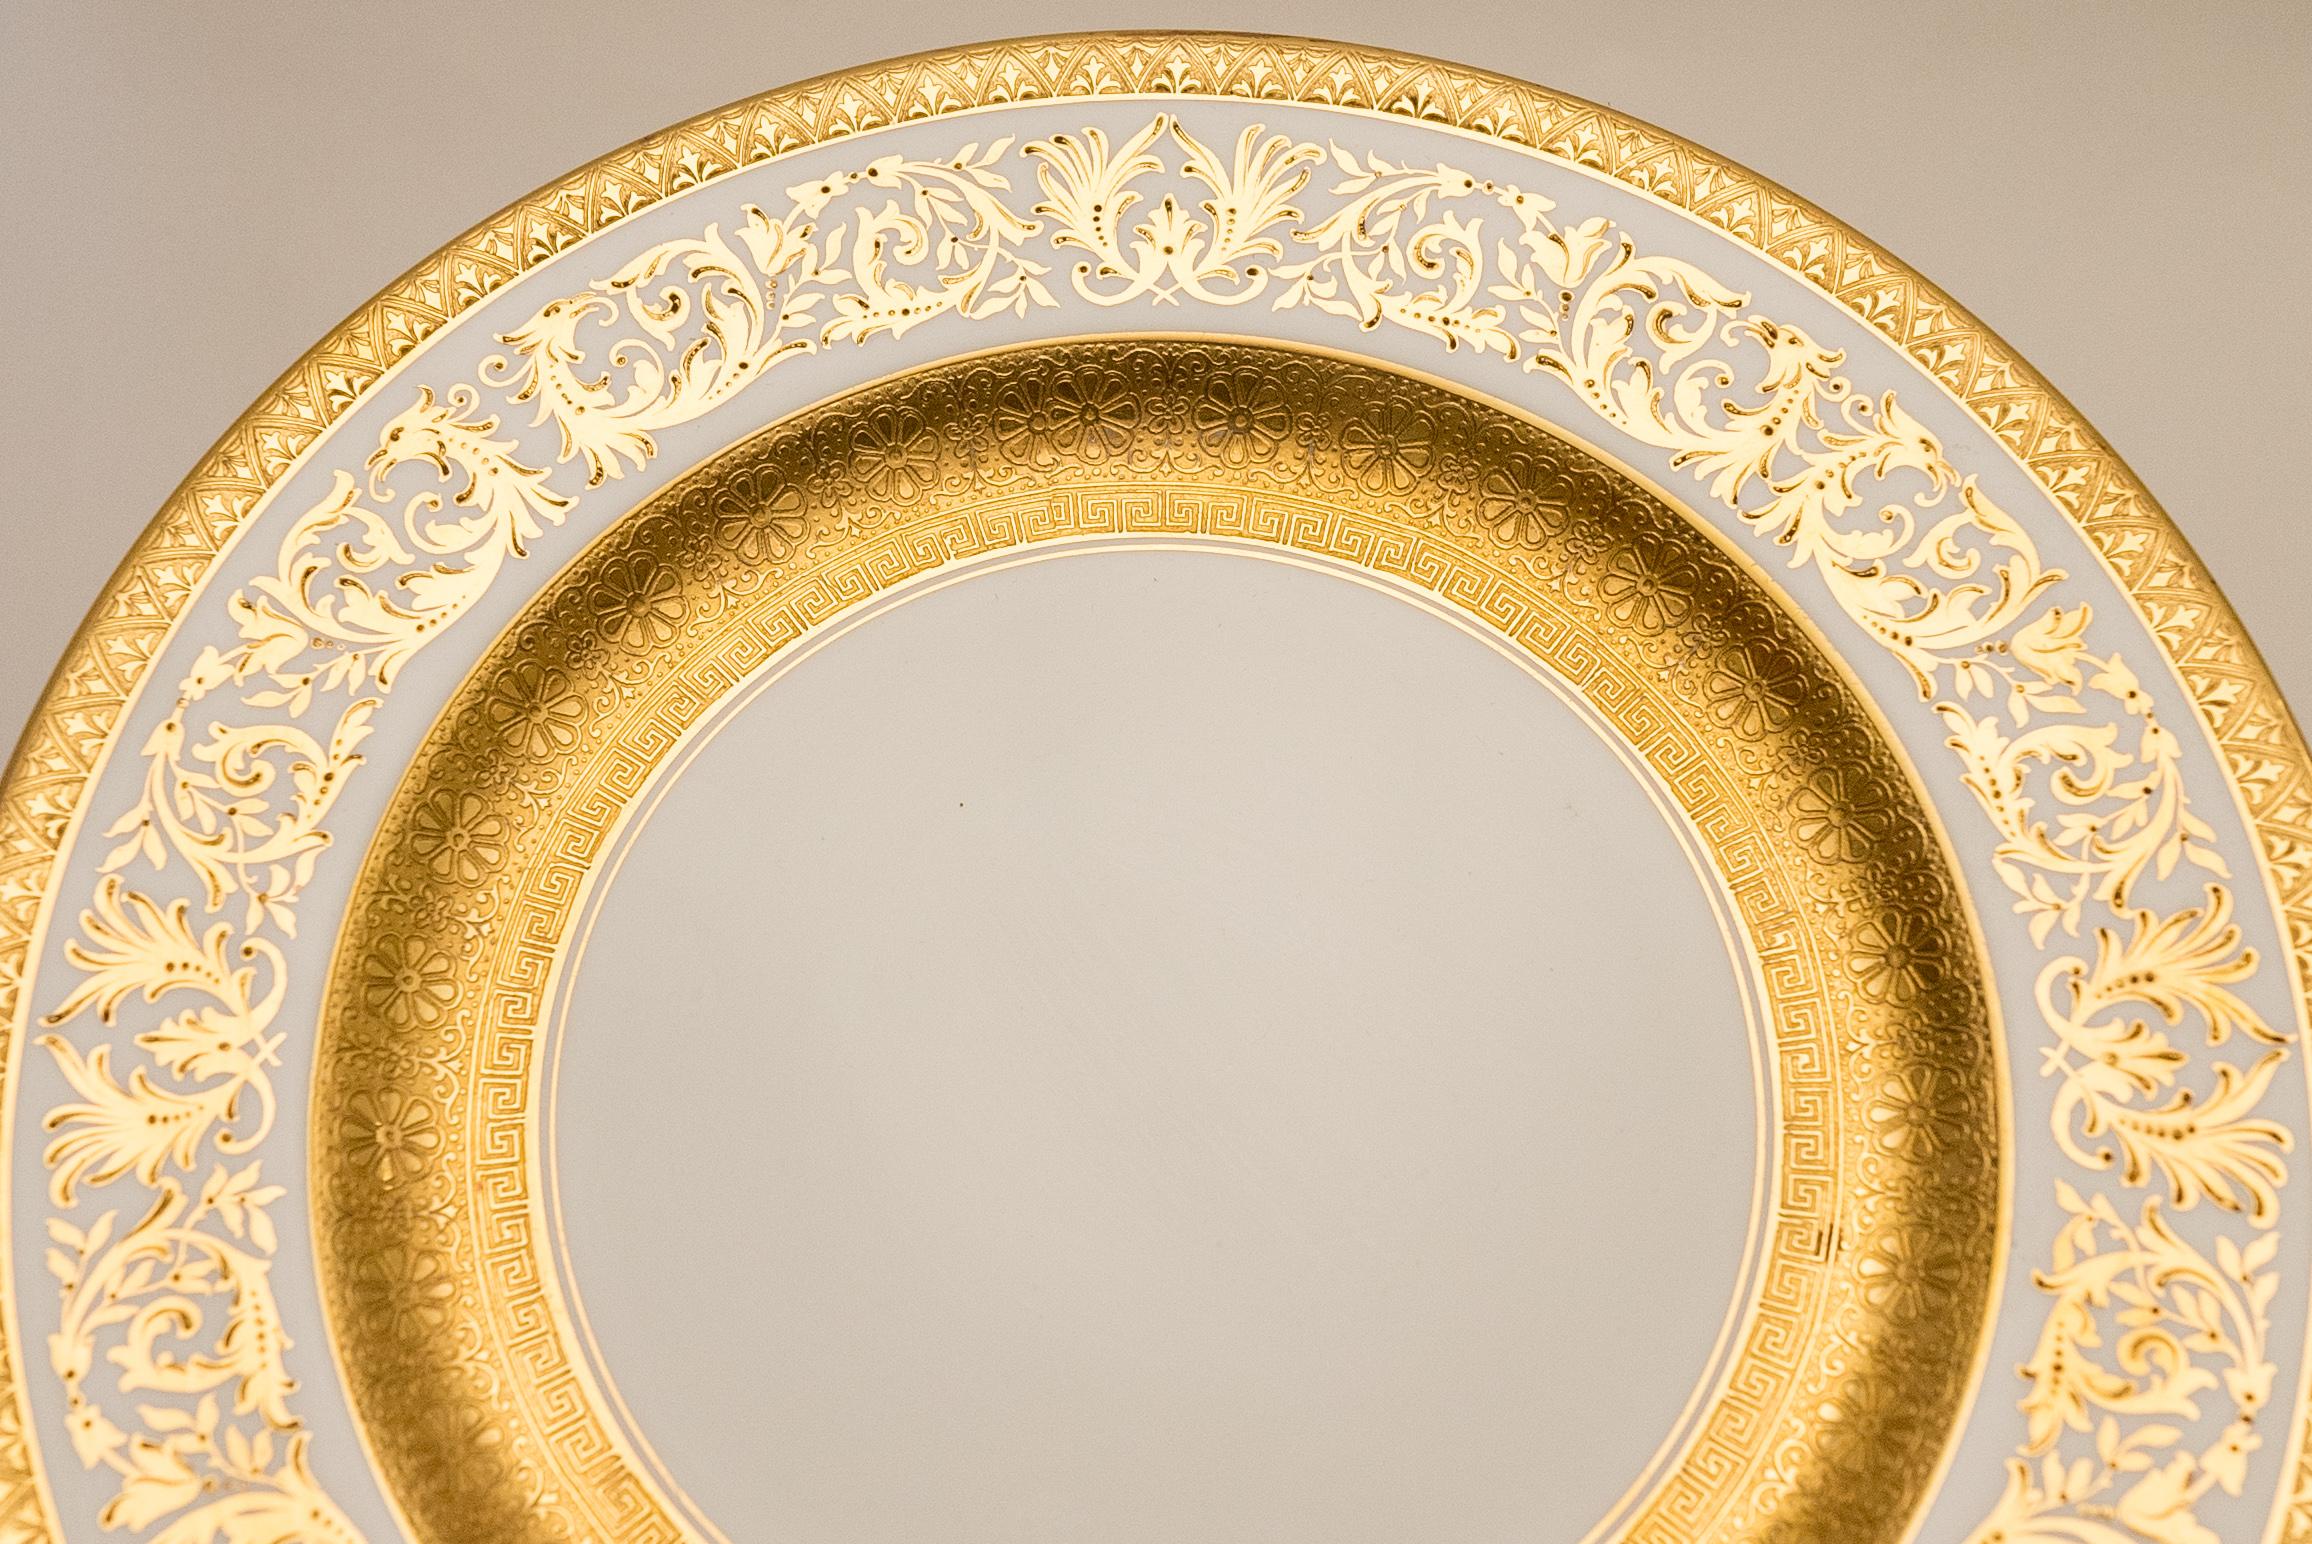 Rococo 11 assiettes plates incrustées de dorures, commande ancienne sur mesure avec large bandeau en or